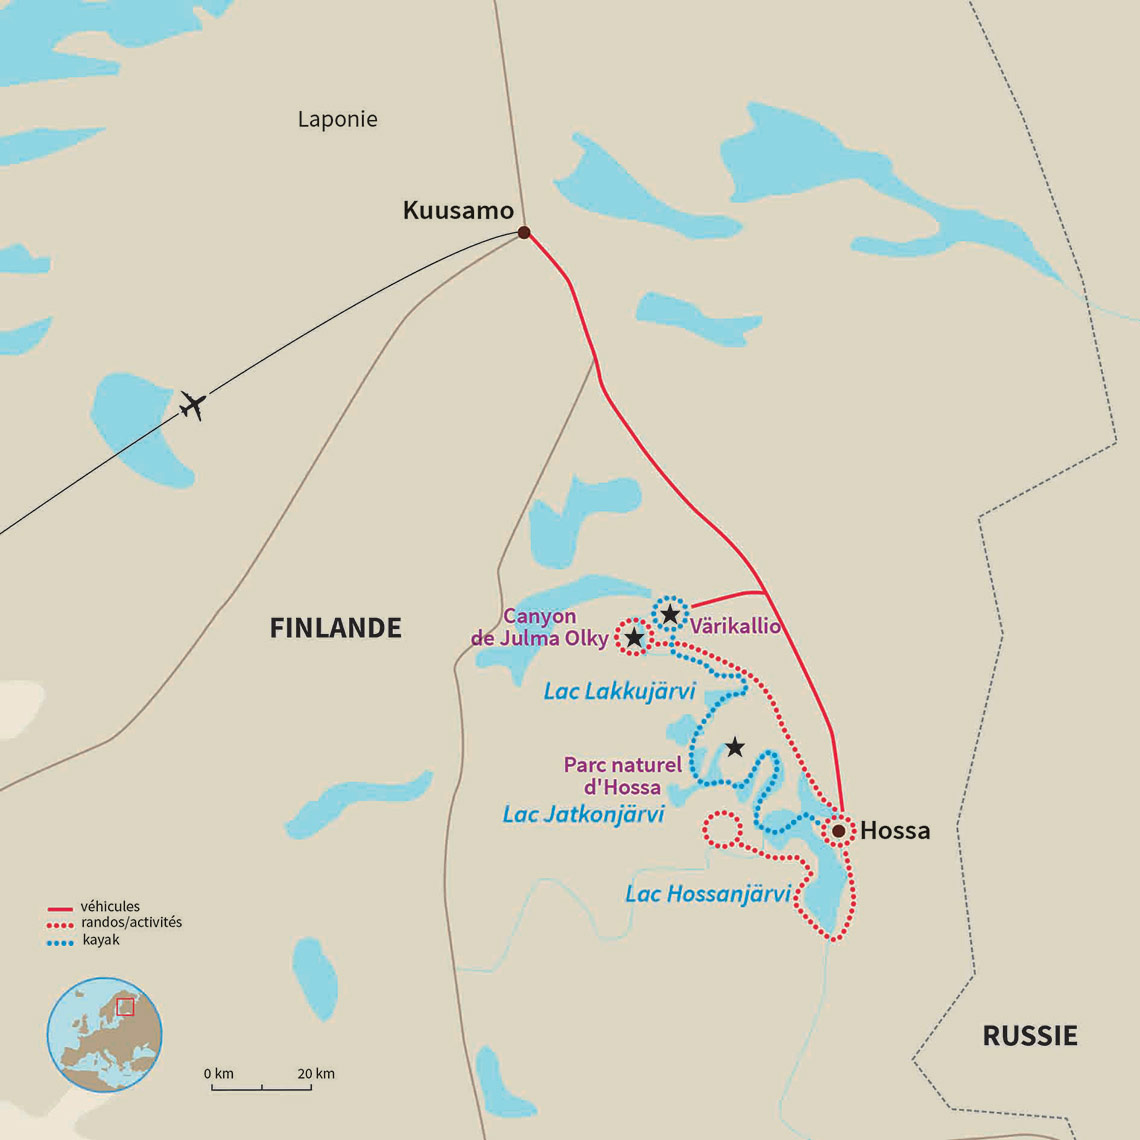 Carte Finlande : Au cœur de l'été arctique finlandais